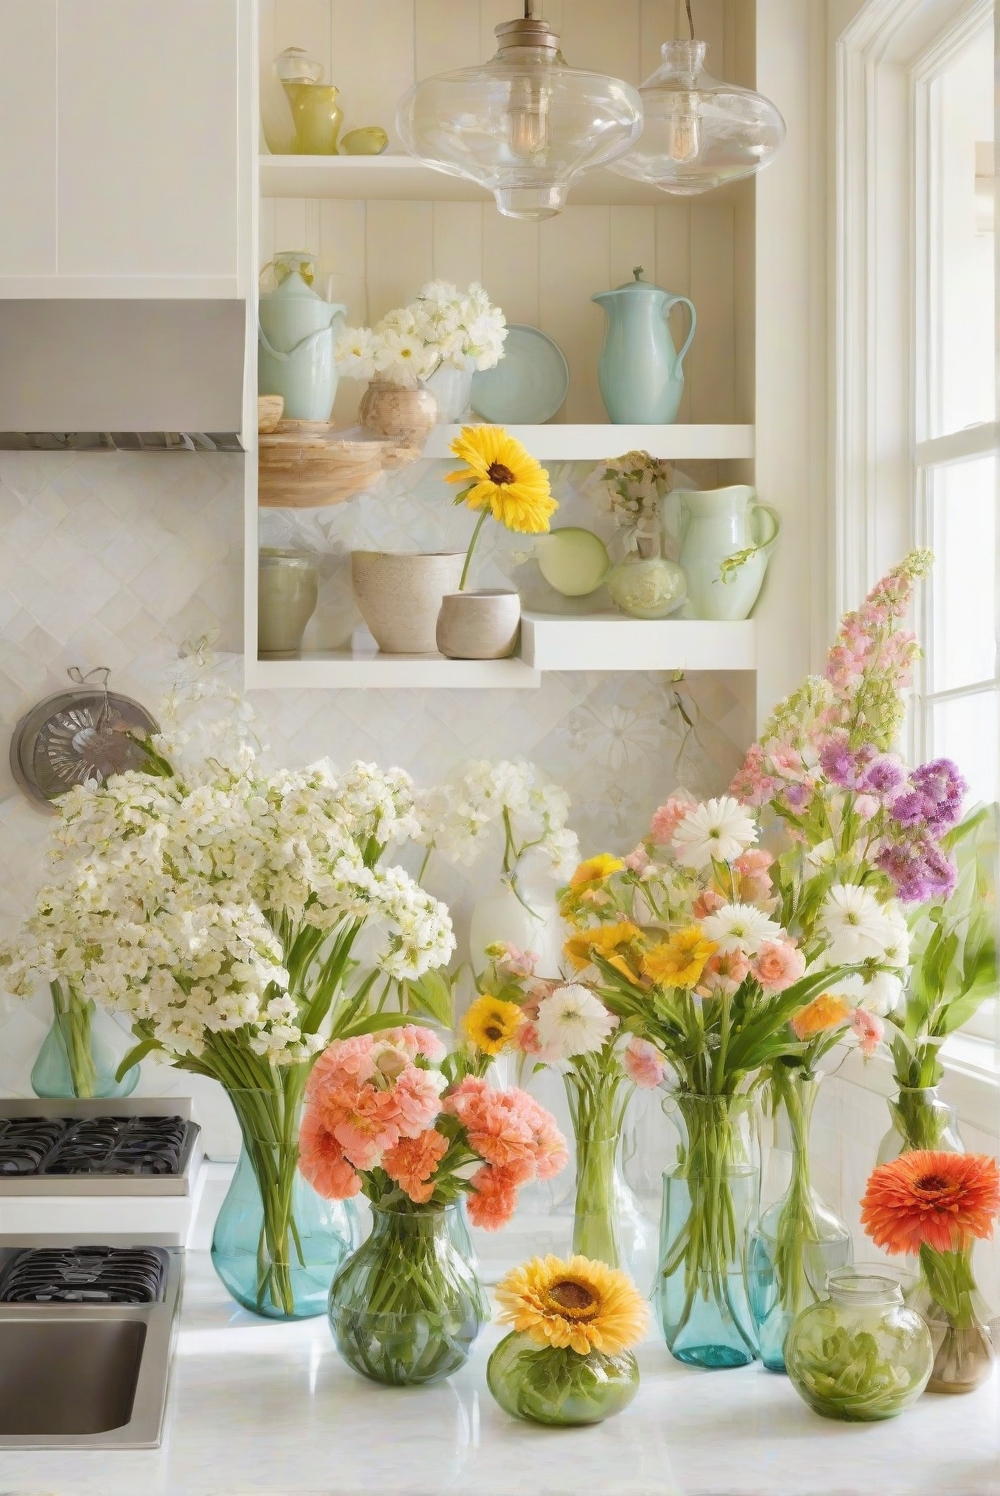 kitchen decor, kitchen interior design, kitchen decorating ideas, floral arrangements, floral decor, vase decor, interior design flowers